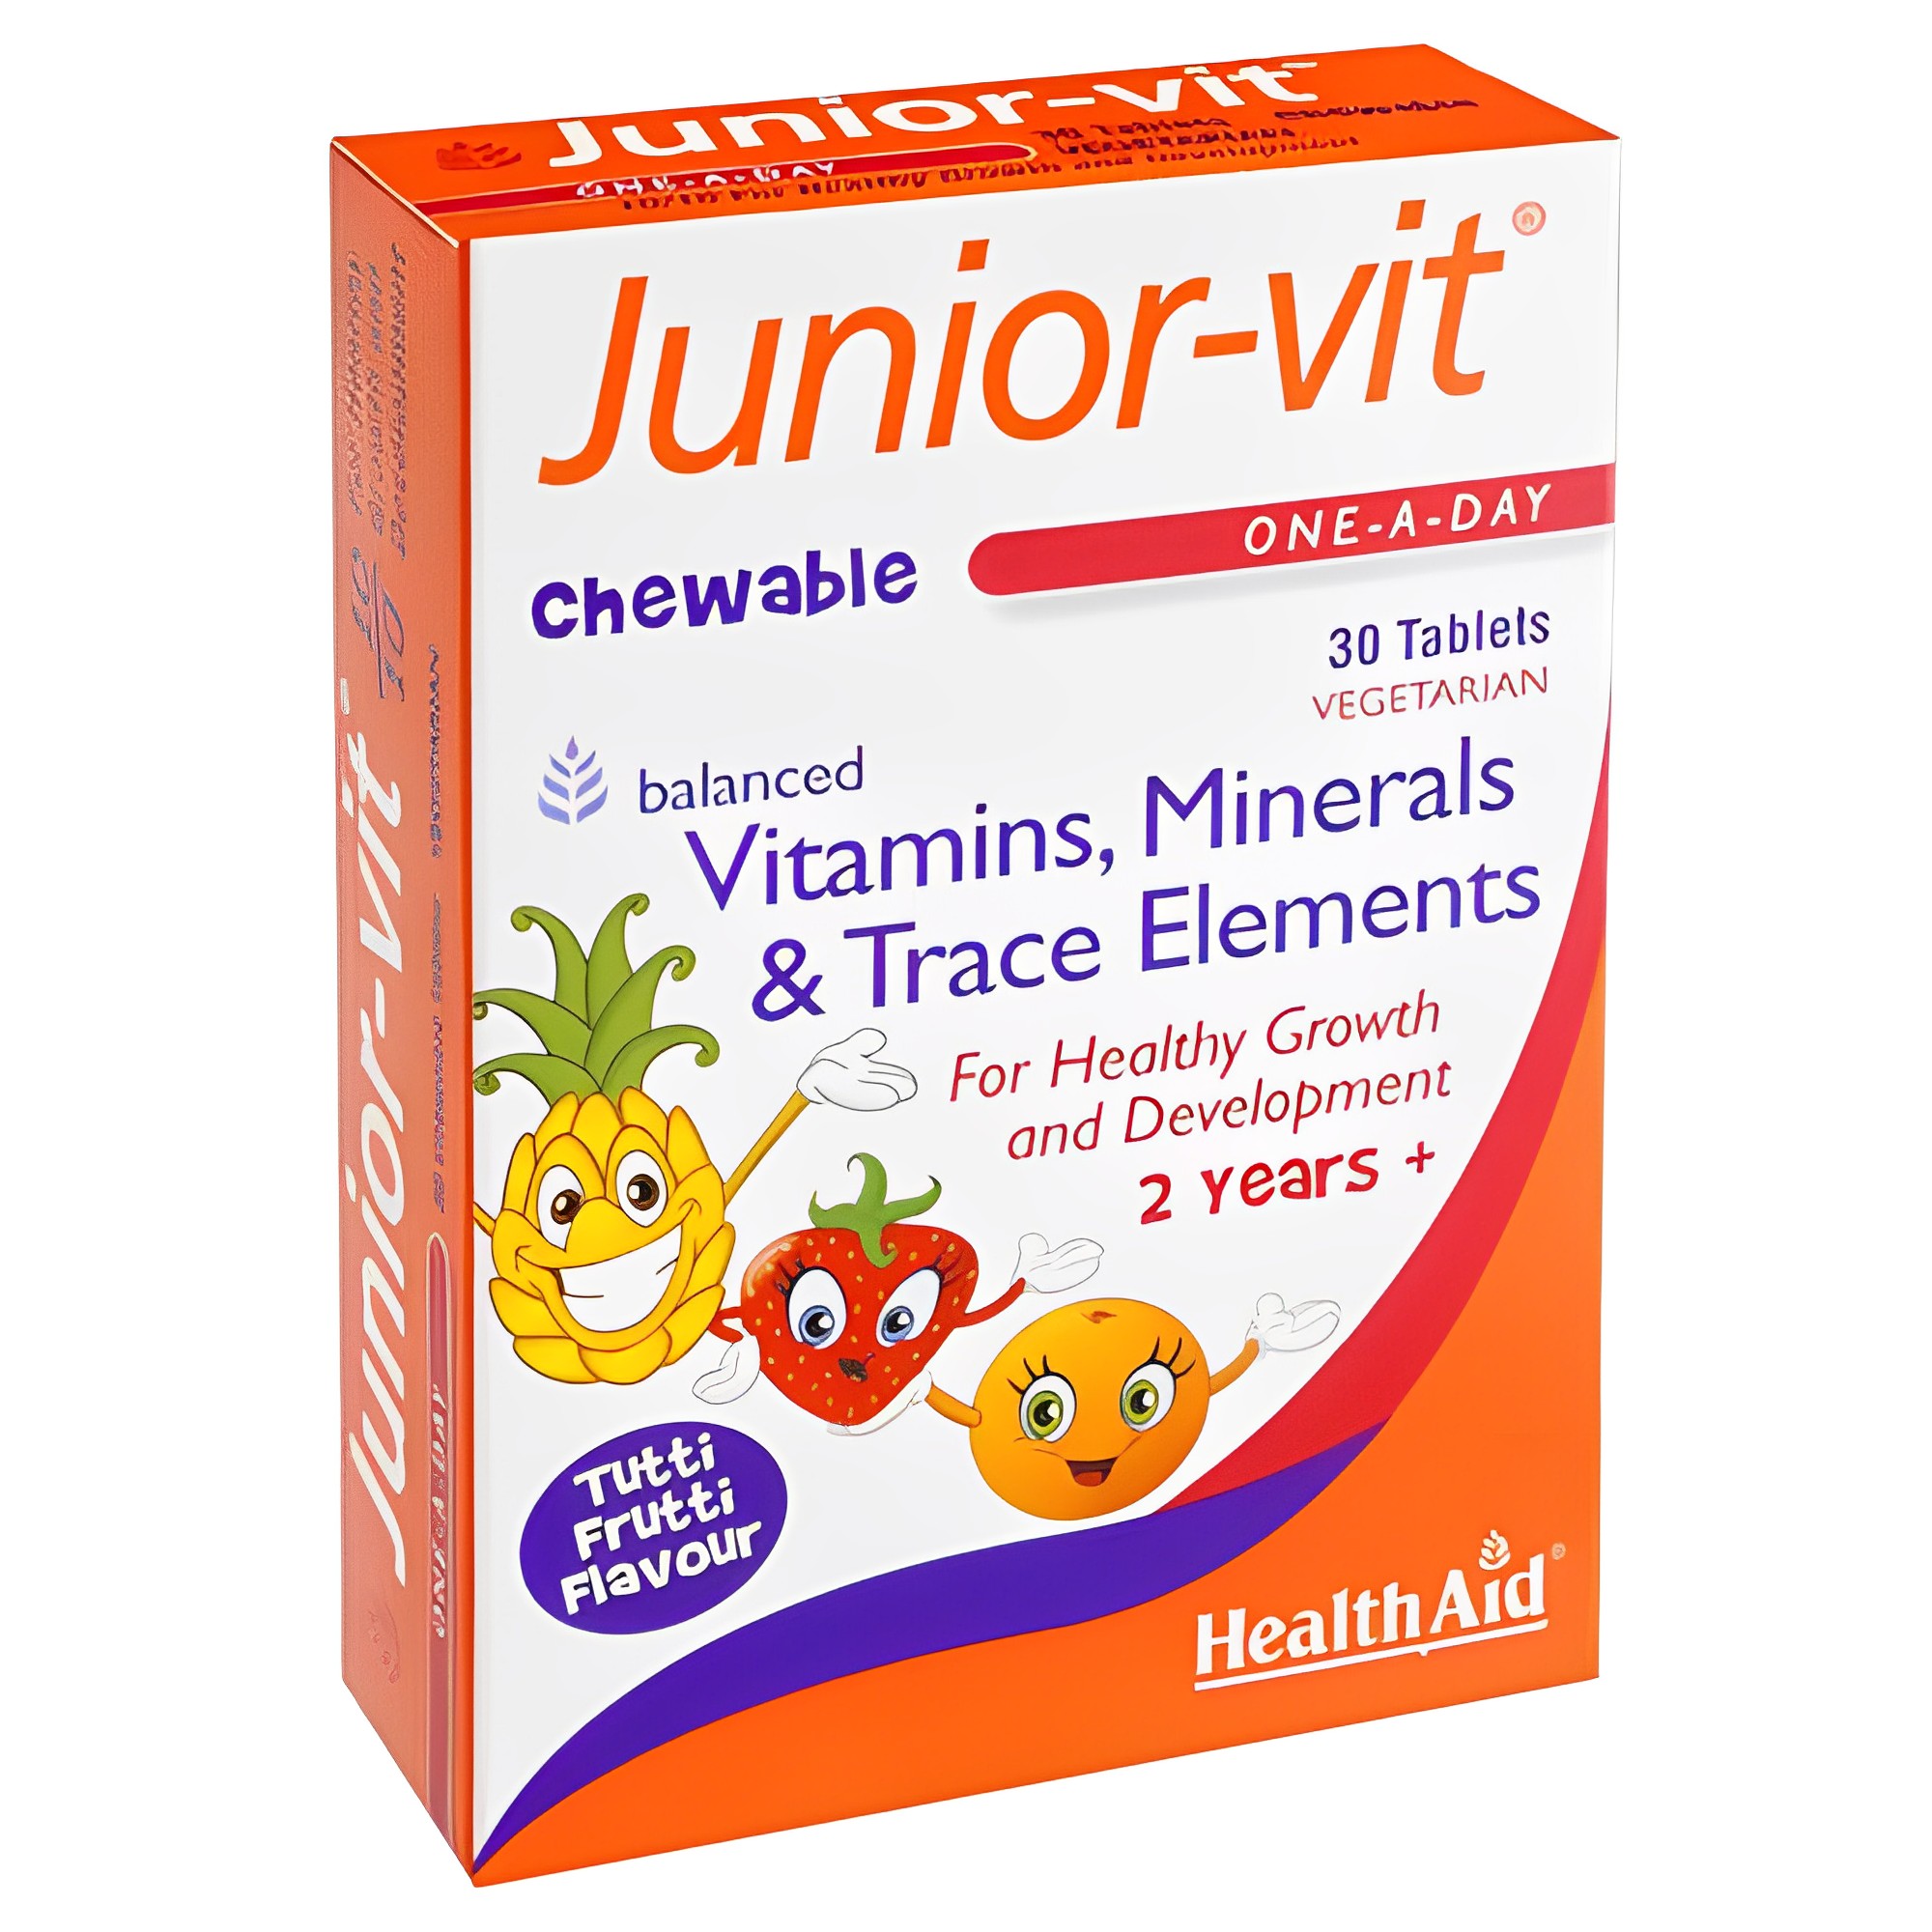 HealthAid Junior-Vit Chewable Tablets, sản phẩm giàu vitamin B, sắt và Vitamin D 30 viên